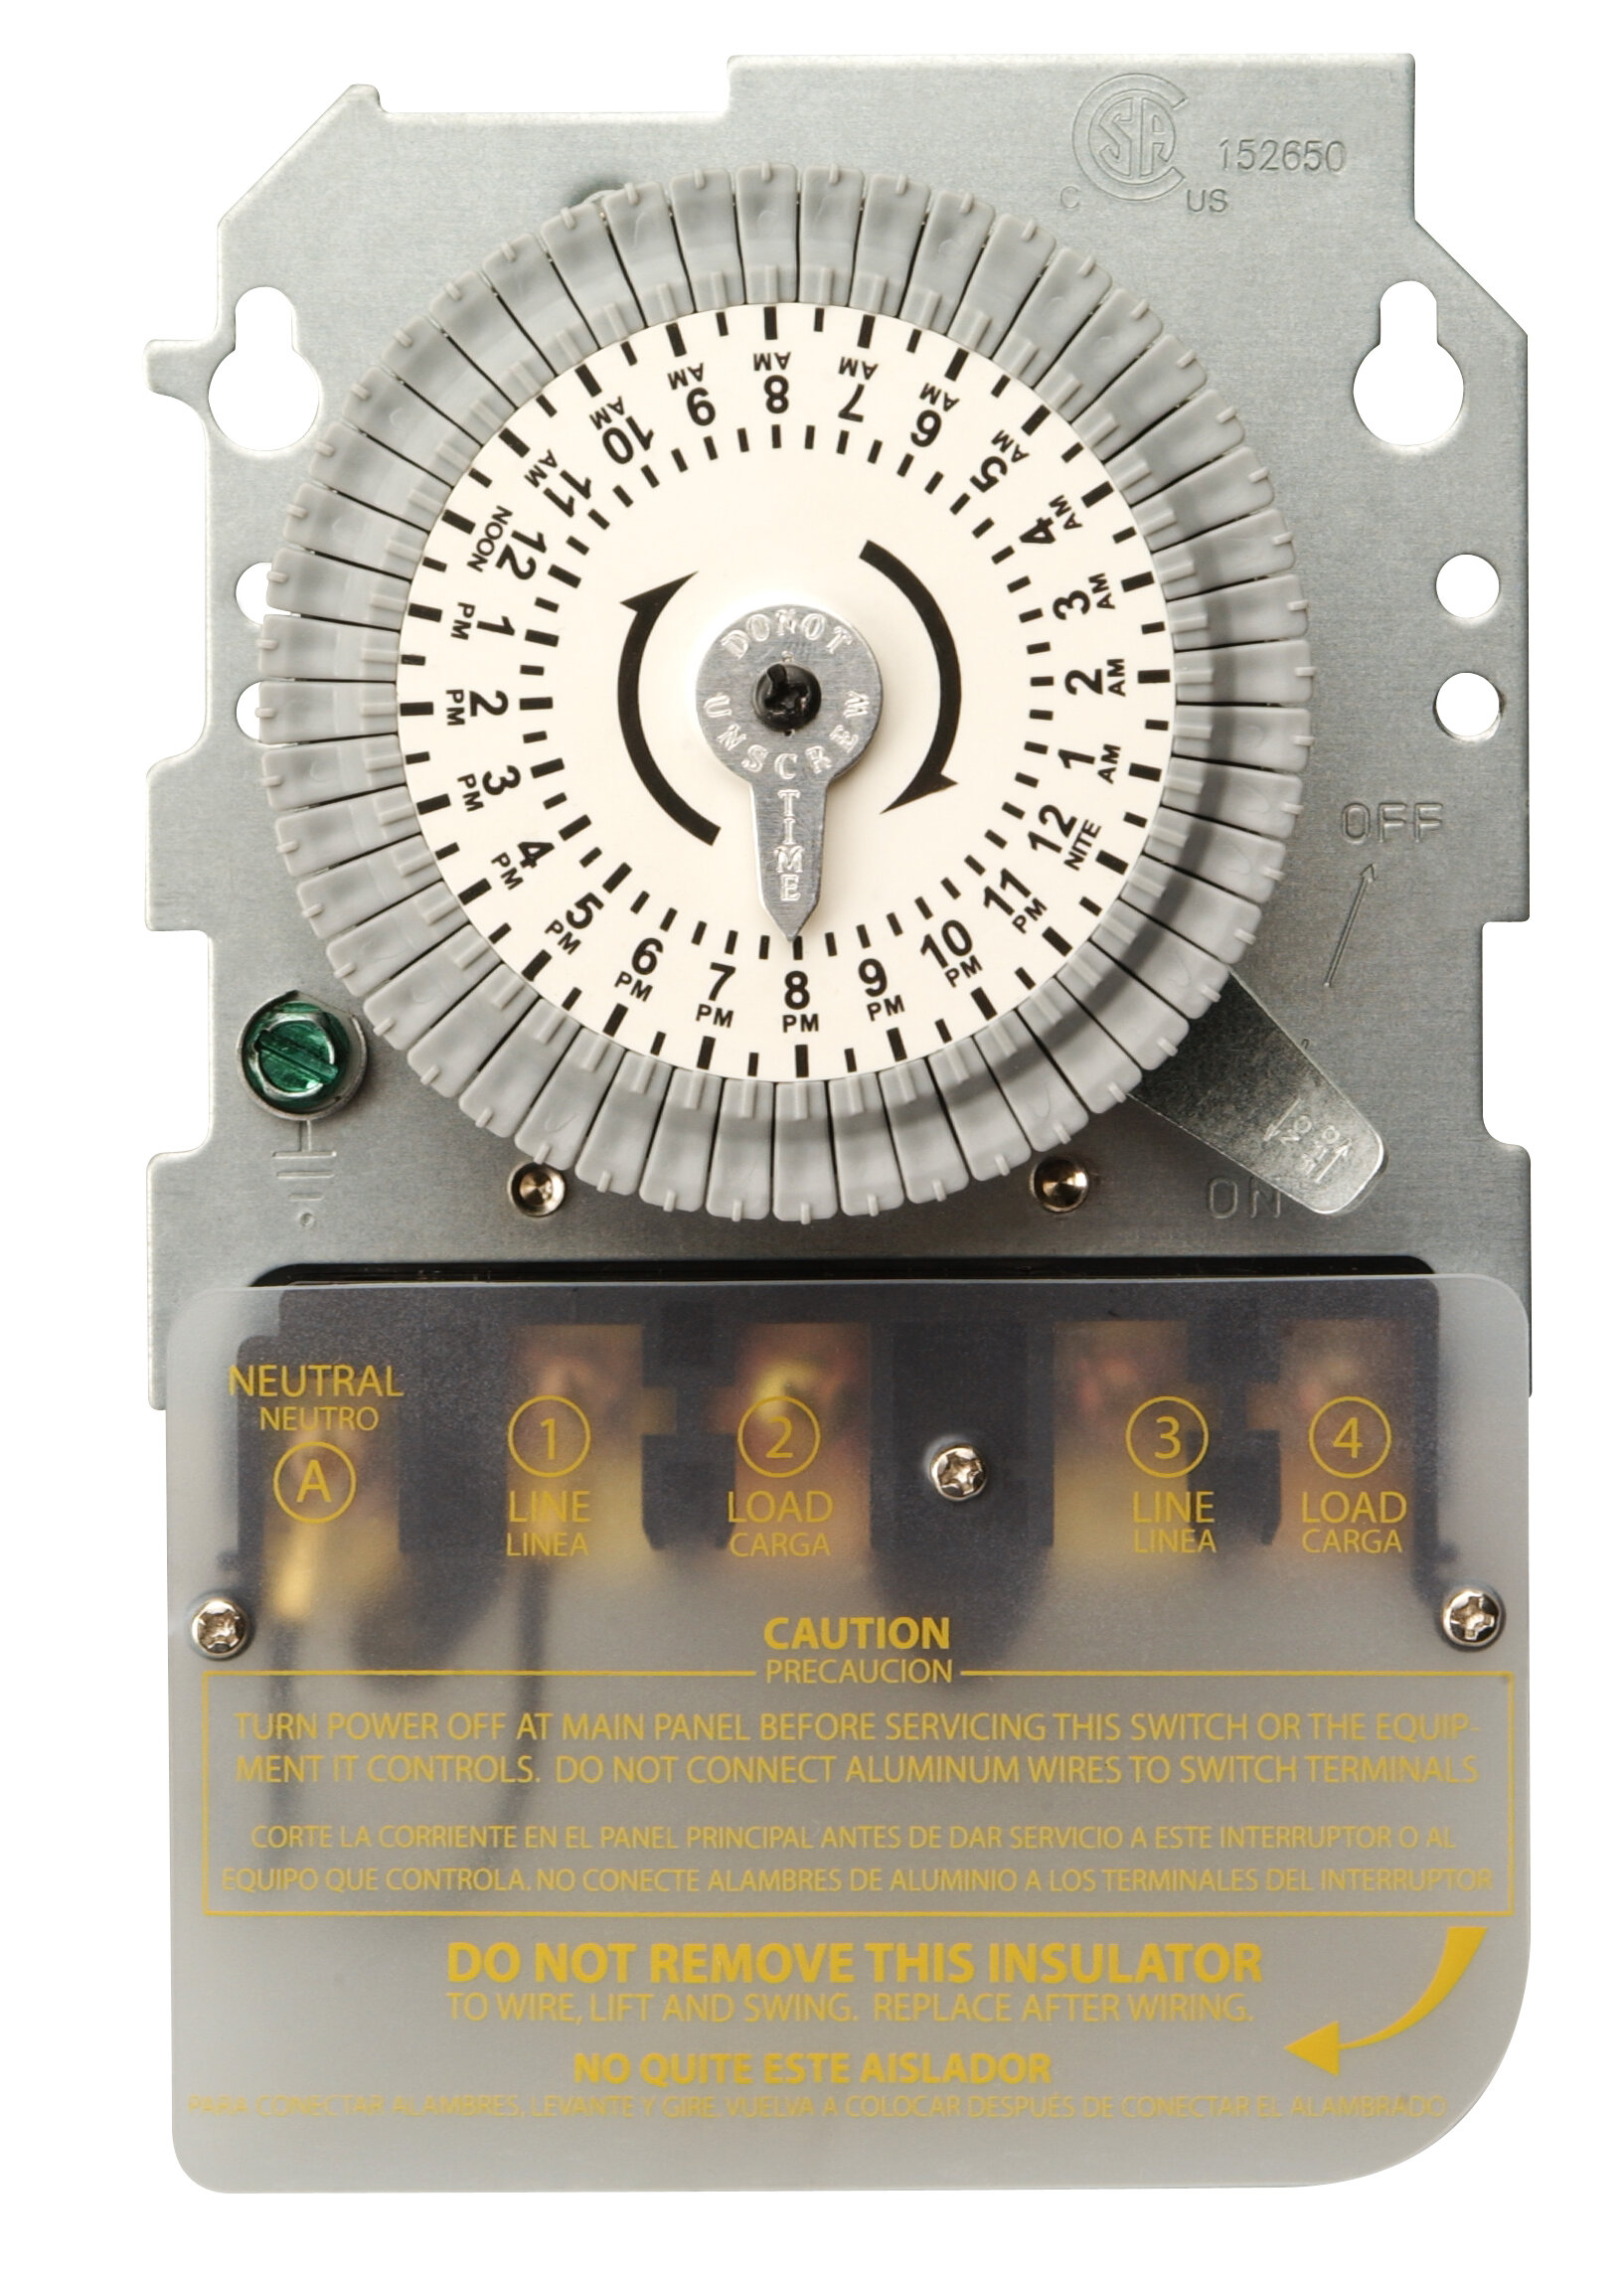 Goneryl oppakken Opera Woods Replacement Mechanical Timer | Wayfair